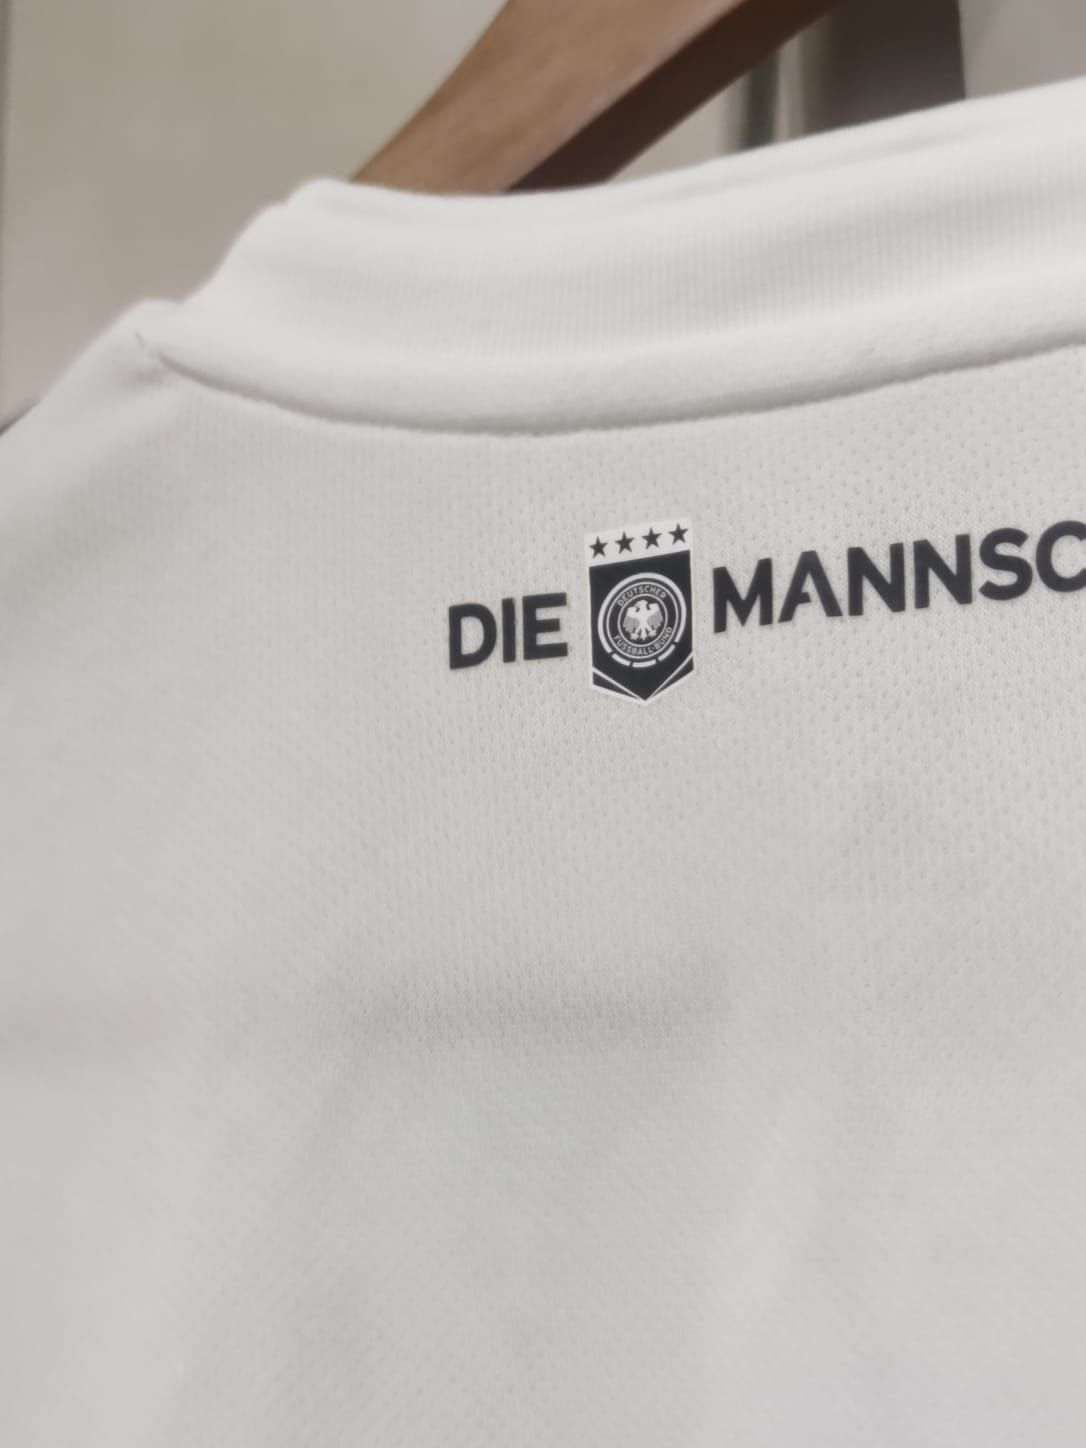 bluzka koszulka sportowa Jersey piłkarska adidas germany M niemiecka t